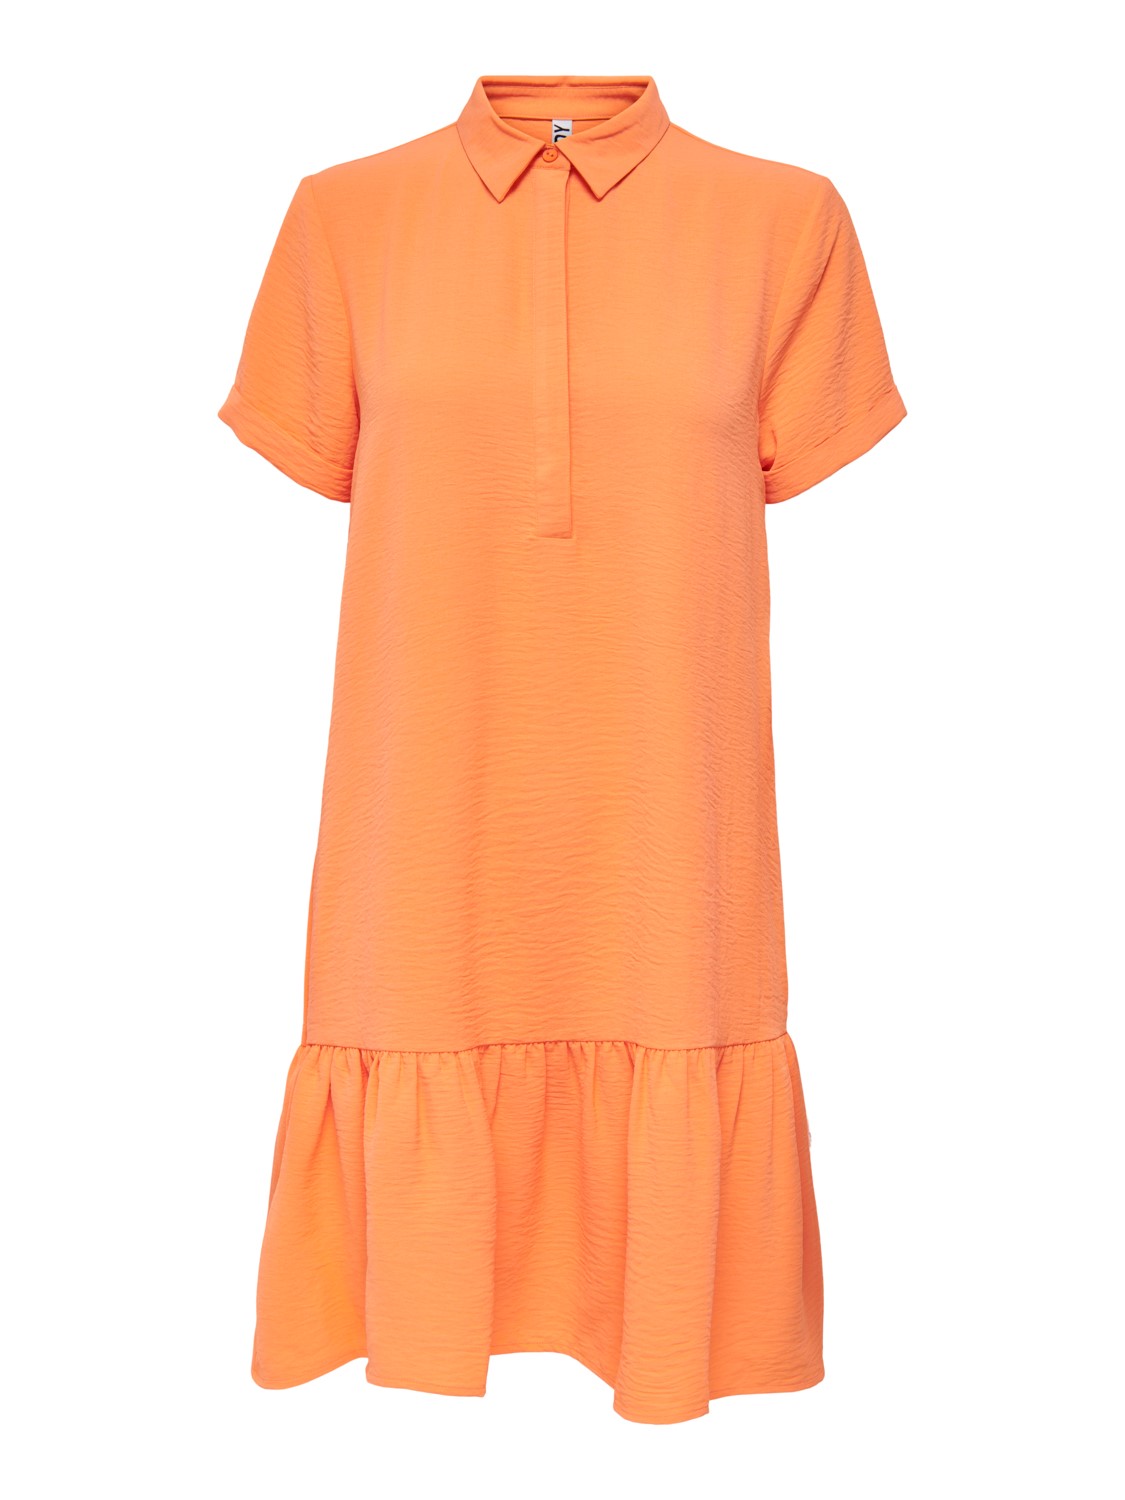 JDY Placket Dress, oransje